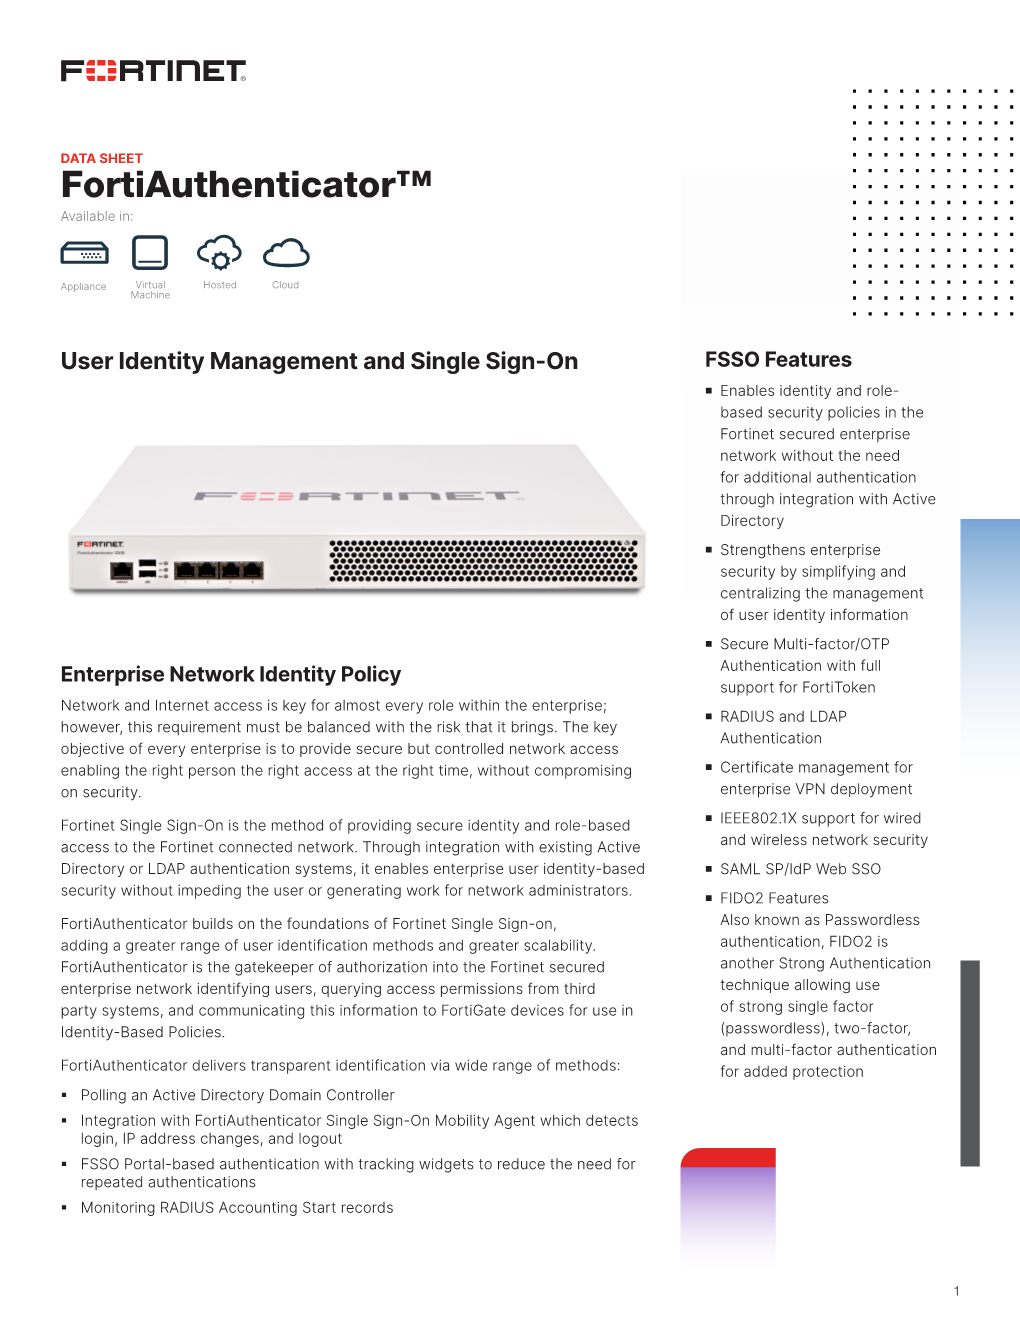 Fortiauthenticator Data Sheet